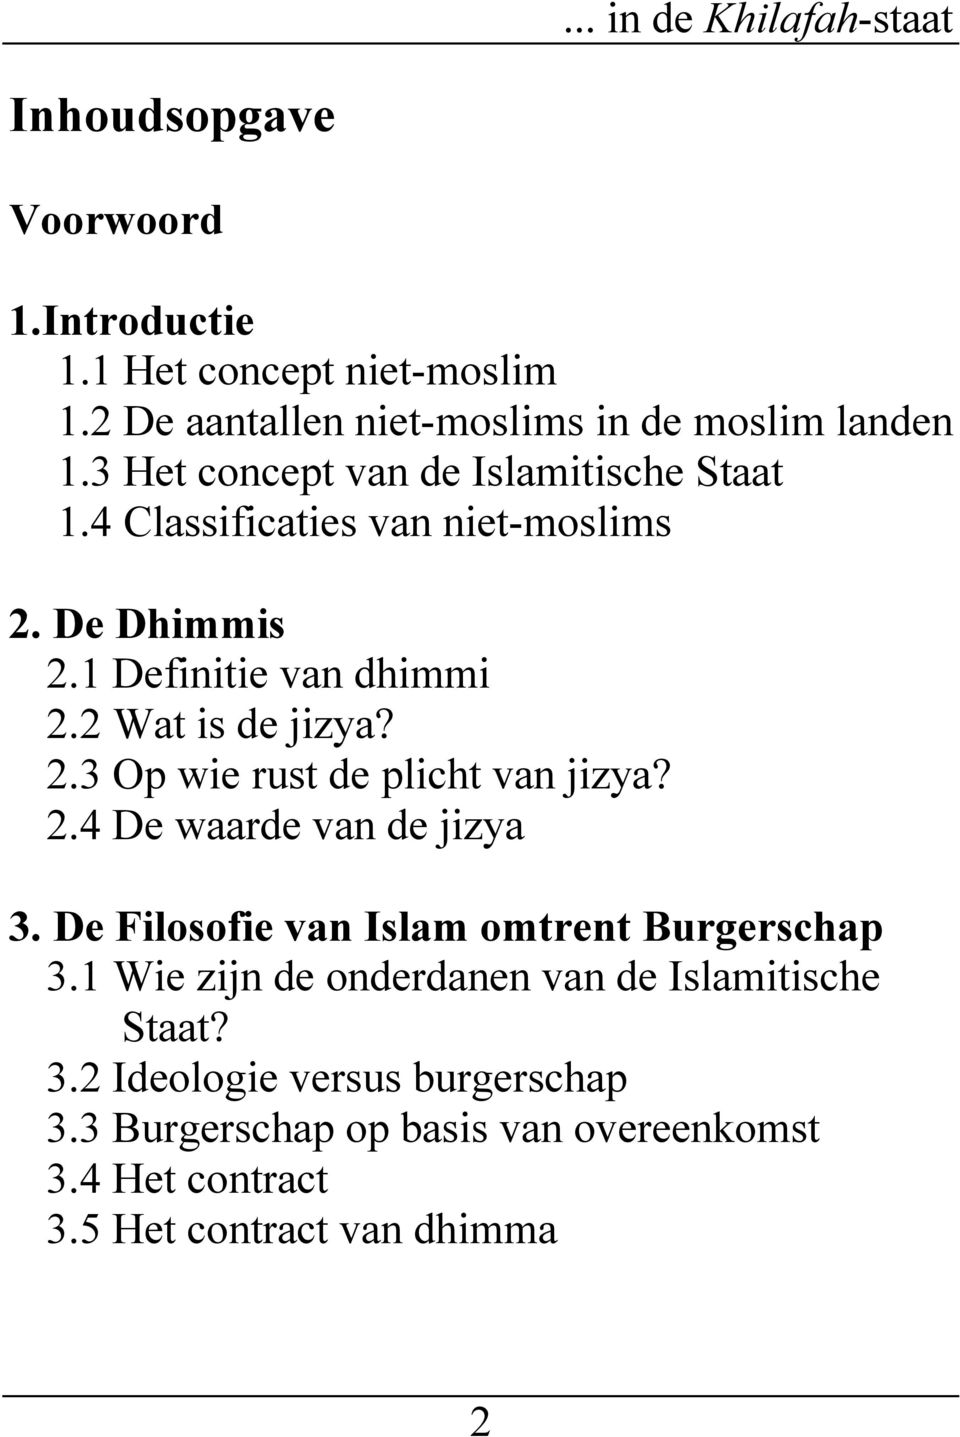 De Dhimmis 2.1 Definitie van dhimmi 2.2 Wat is de jizya? 2.3 Op wie rust de plicht van jizya? 2.4 De waarde van de jizya 3.